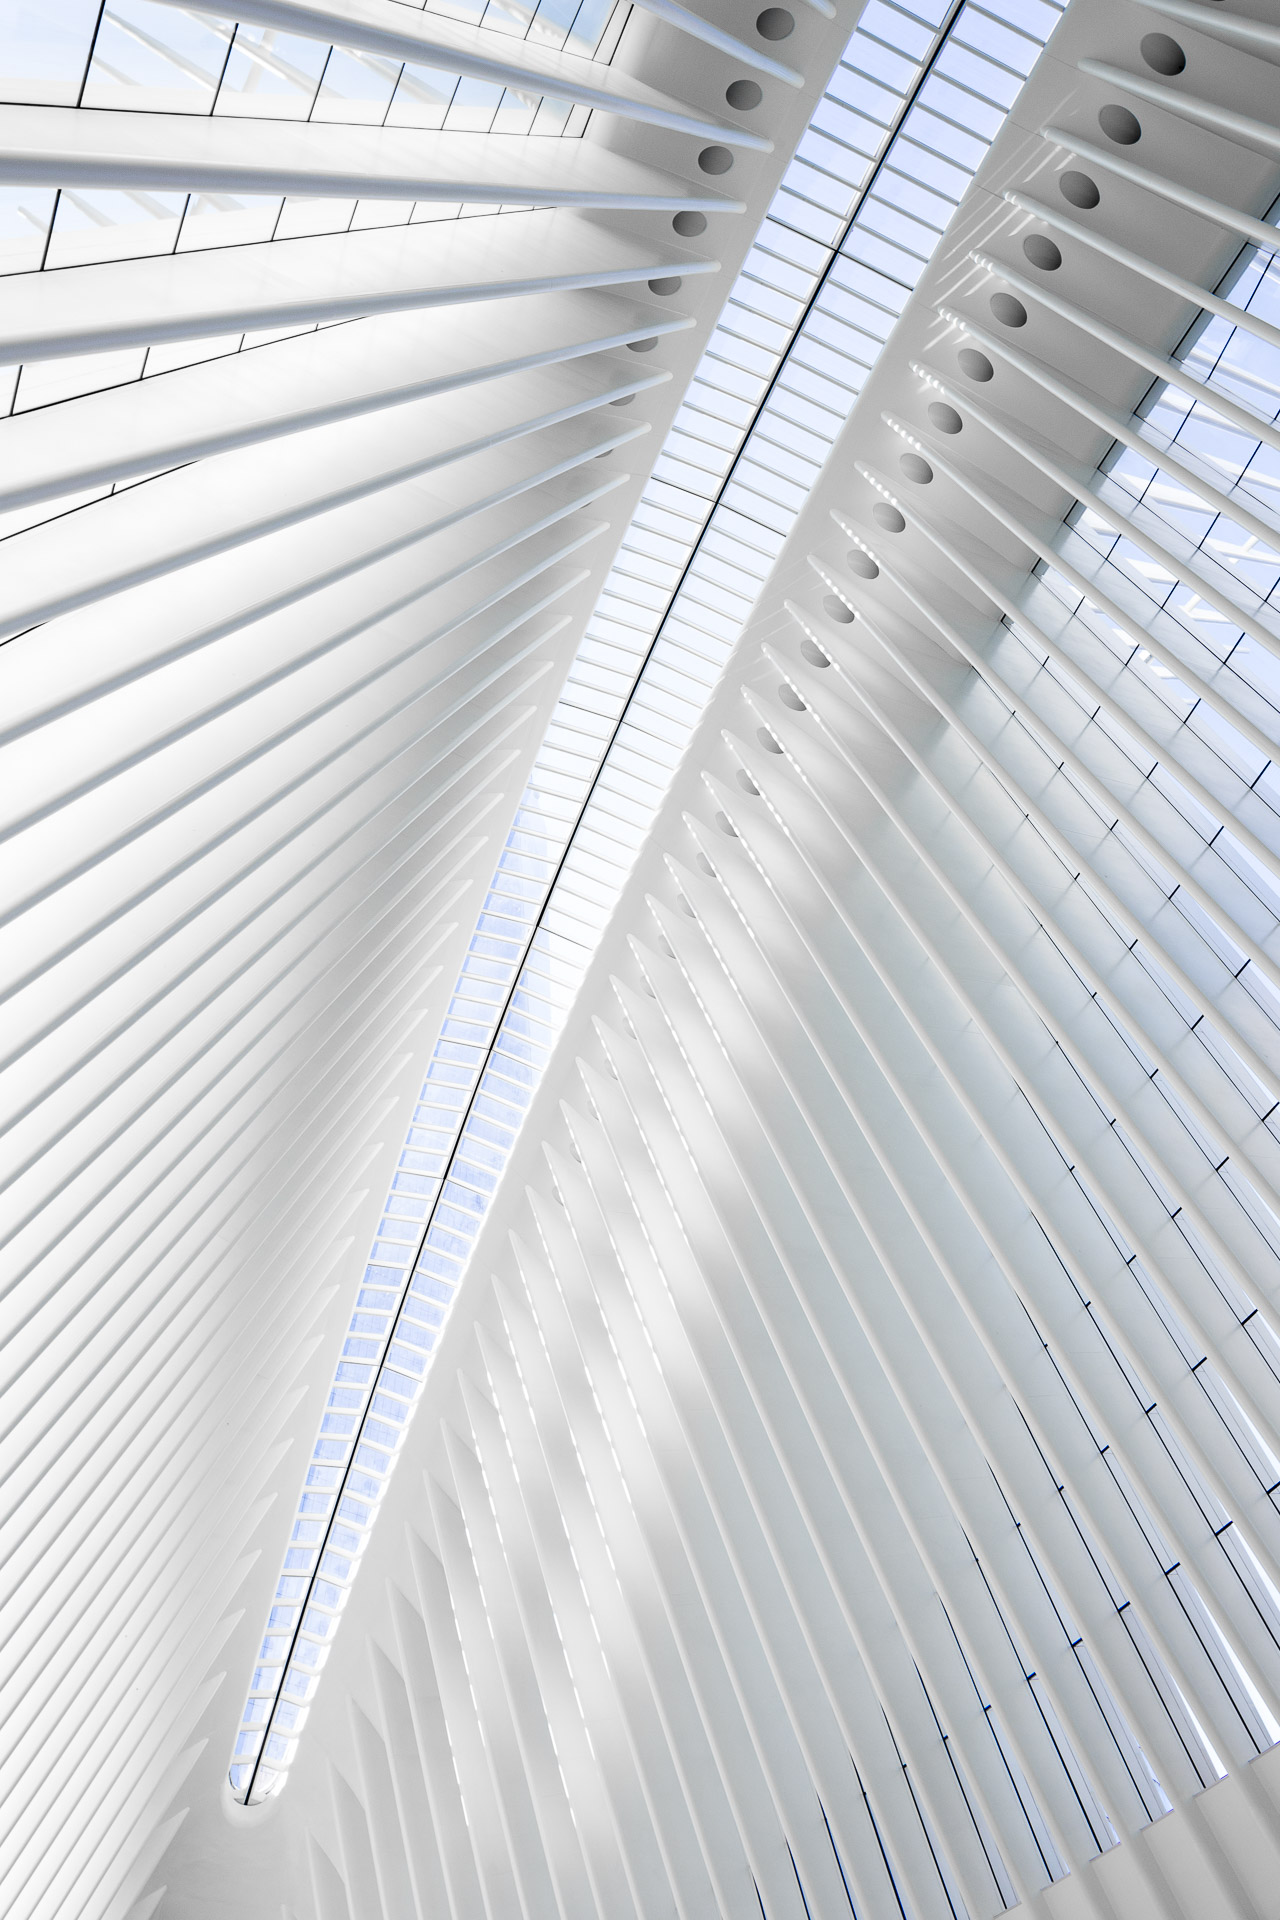 WTC Oculus-Calatrava